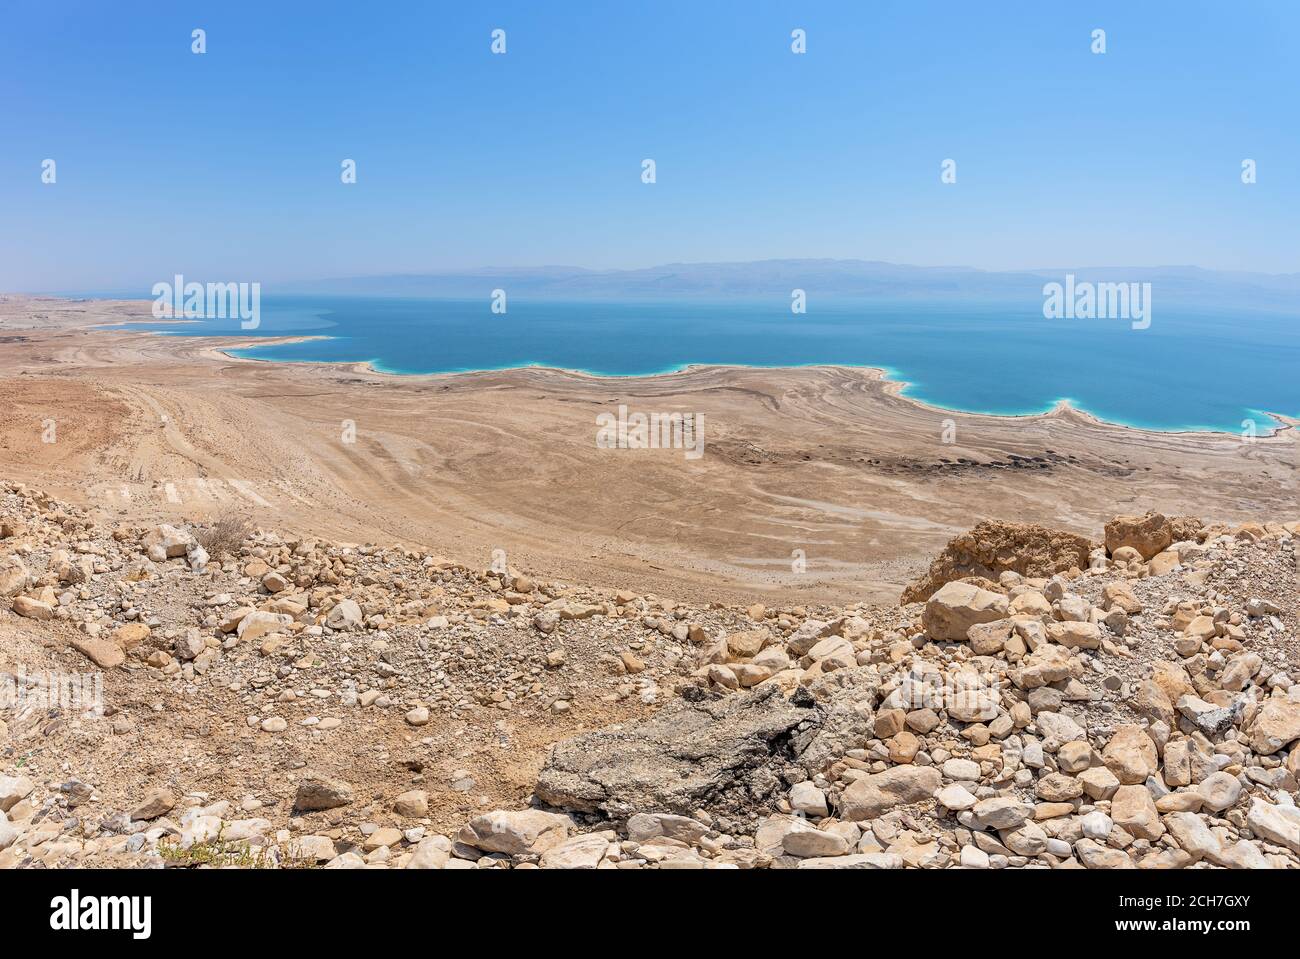 Une vue sur la mer Morte, Israël, la plus basse place sur terre Banque D'Images